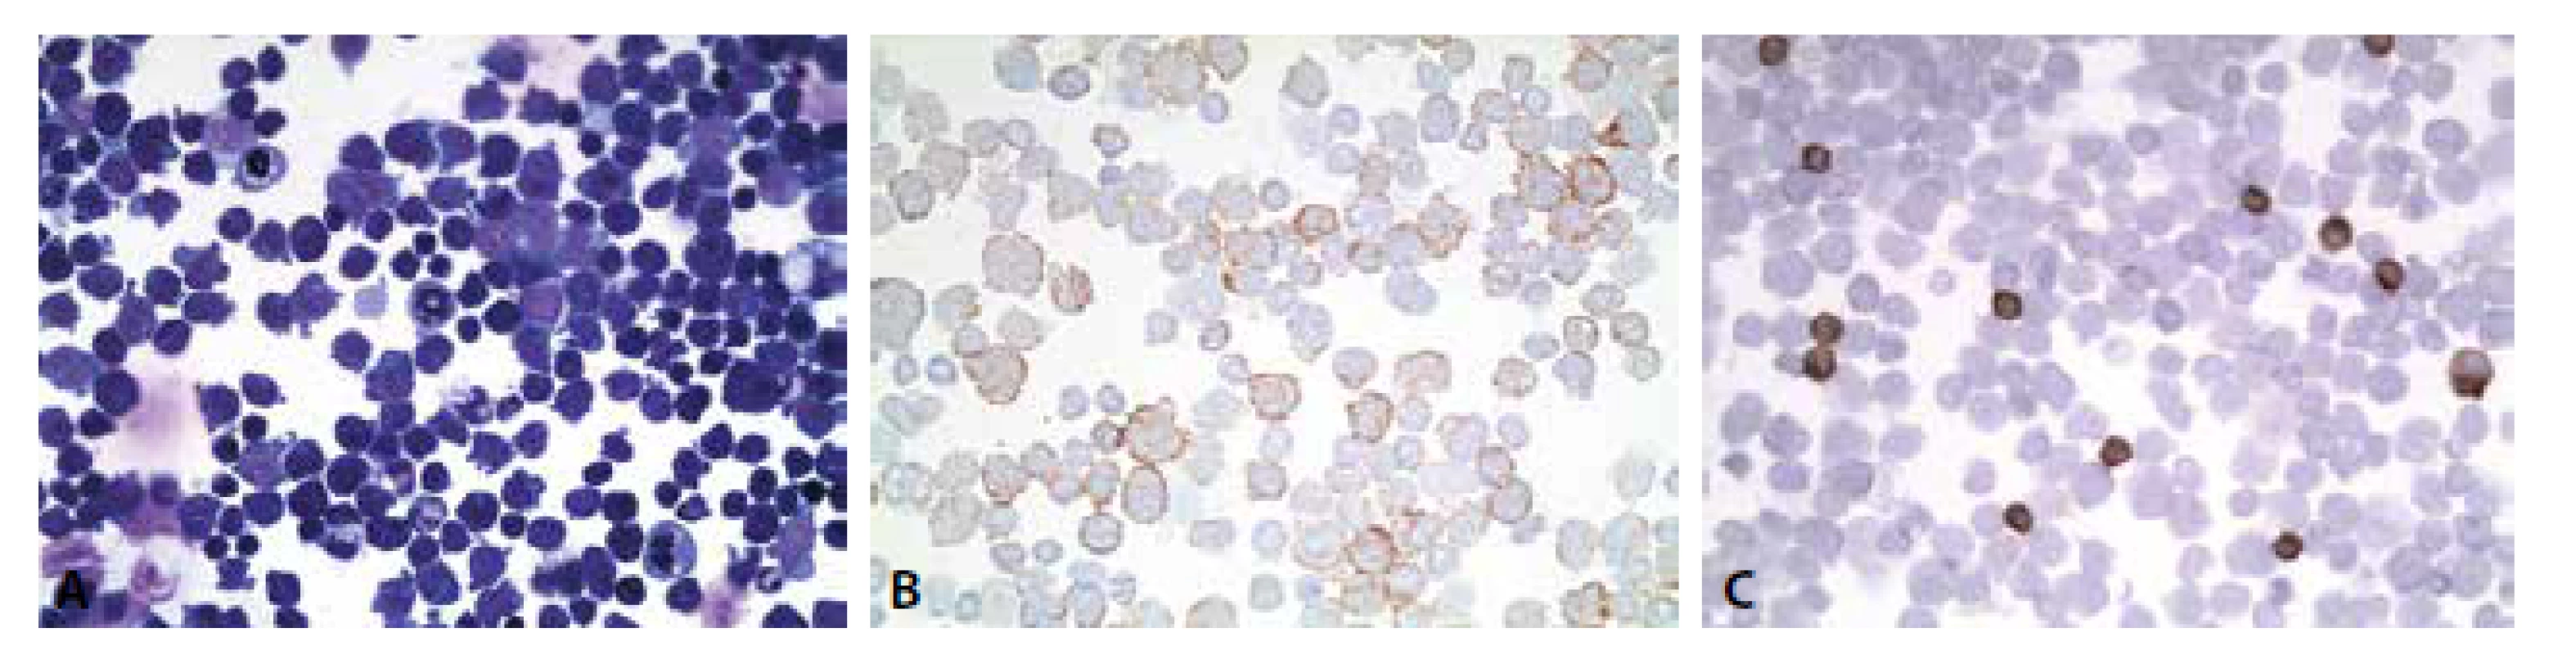 (A) Monomorfní infiltrace dyskohezivními elementy , jejichž morfologie je konsistentní s anamnesticky udaným DLBCL. (B) Pozitivita
CD79a v nádorových buňkách. 400x. (C) Pozitivita CD3 v nenádorových malých lymfocytech. Nádorové buňky negativní. 400x.